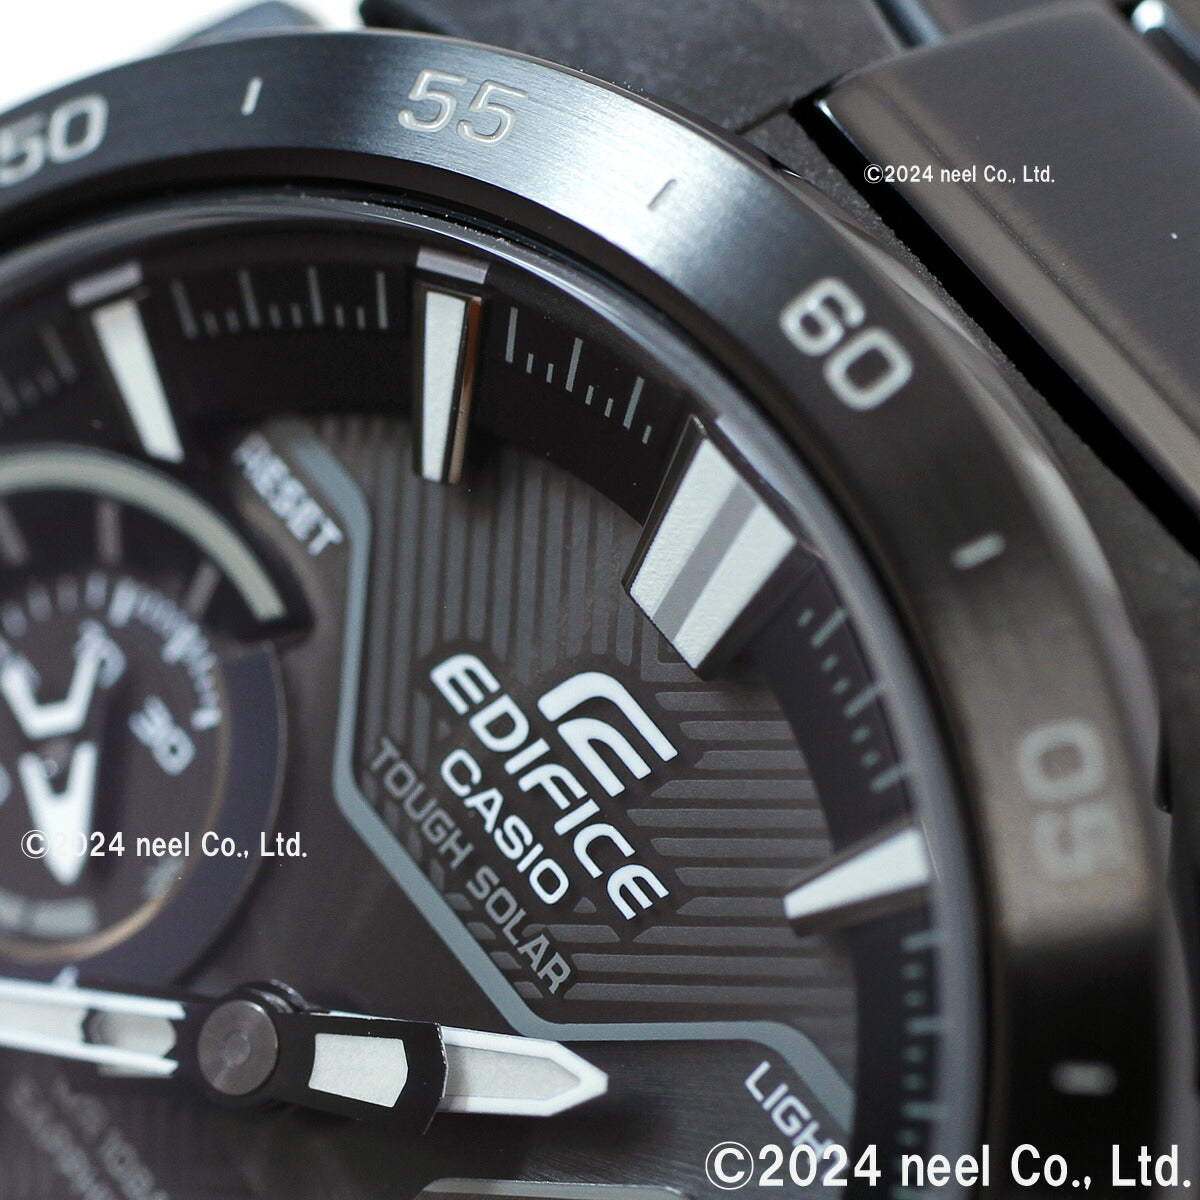 カシオ エディフィス CASIO EDIFICE WINDFLOW ECB-2200YDC-1AJF アナデジ 腕時計 メンズ クロノグラフ ウィンドフロウ スマートフォンリンク